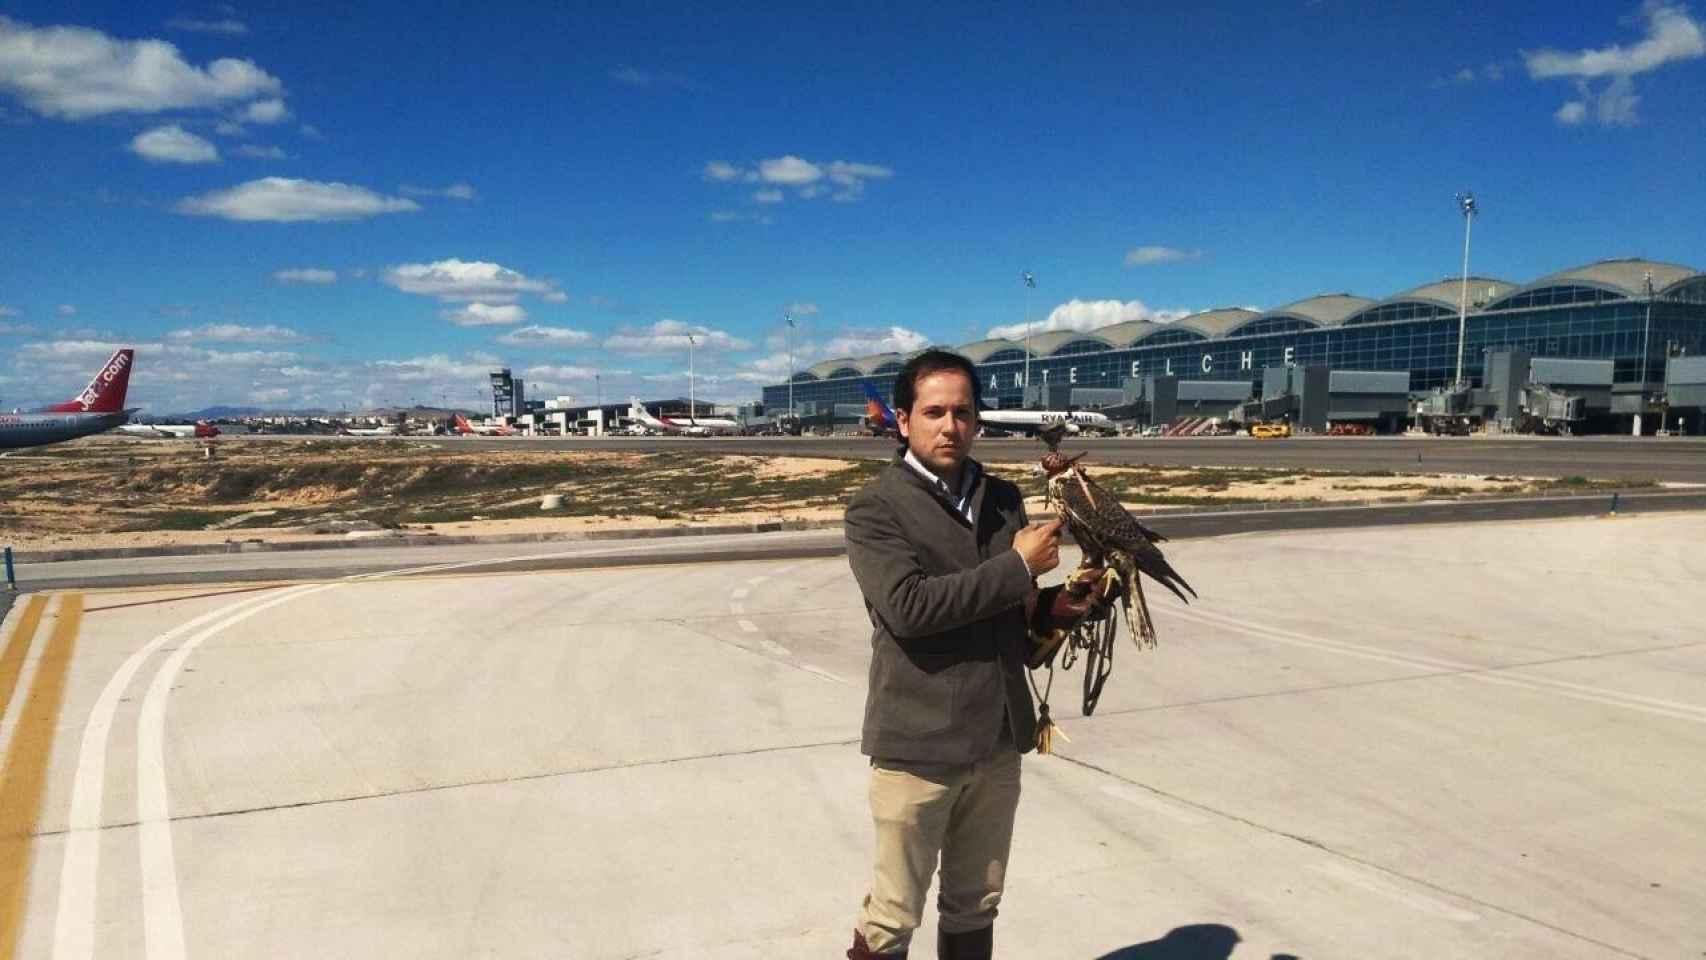 David Santacreu, en el aeropuerto Miguel Hernández de Alicante y Elche con su halcón.